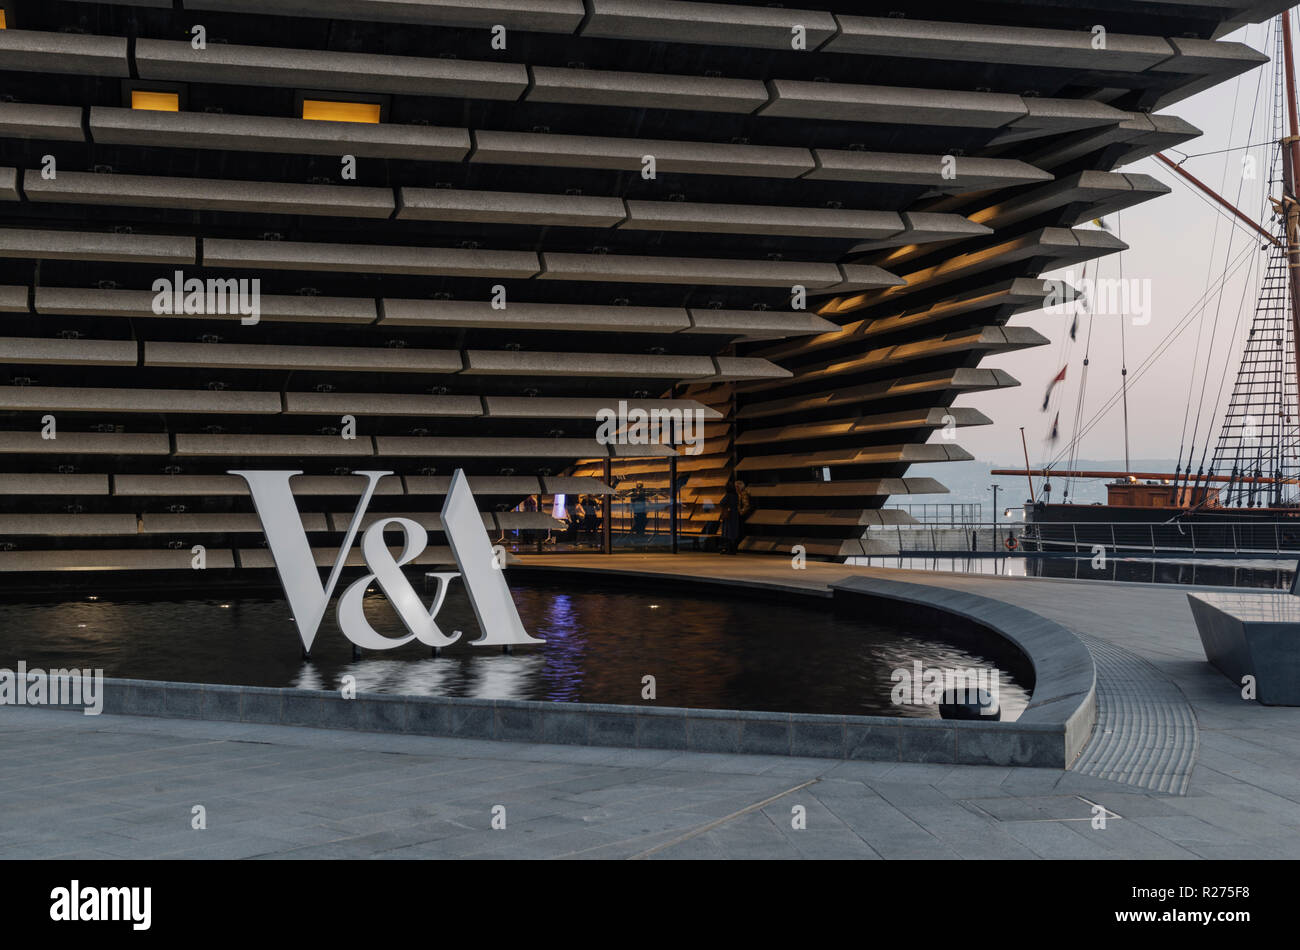 La nouvelle conception de V&A Museum sur le bord de l'eau régénérée Dundee a déjà dépassé les 100 000 Visiteur de passage de moins de 2 mois d'ouverture, Dundee Ecosse UK Banque D'Images